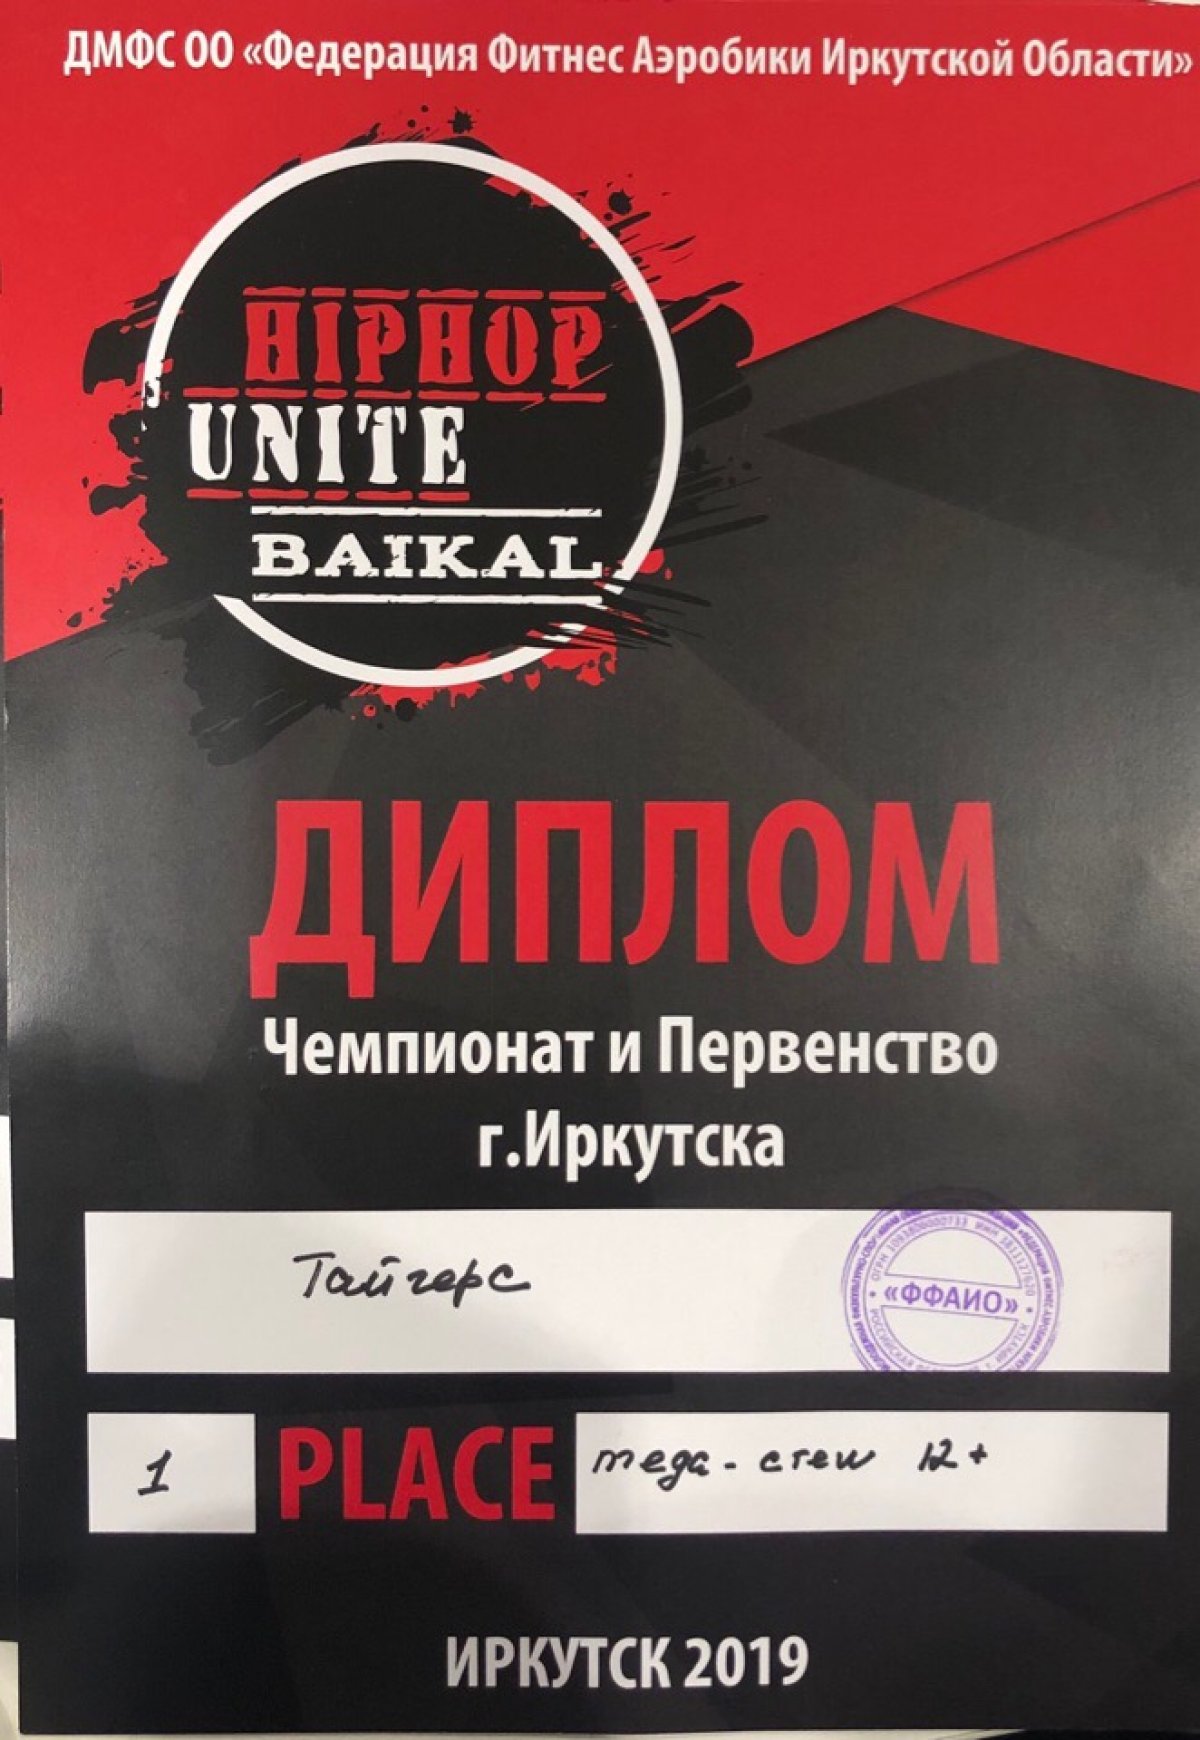 10 марта в СК «Байкал-Арена» проходили чемпионат и первенство г. Иркутска «HIP-HOP UNITE BAIKAL” по фитнес аэробике дисциплине хип-хоп.